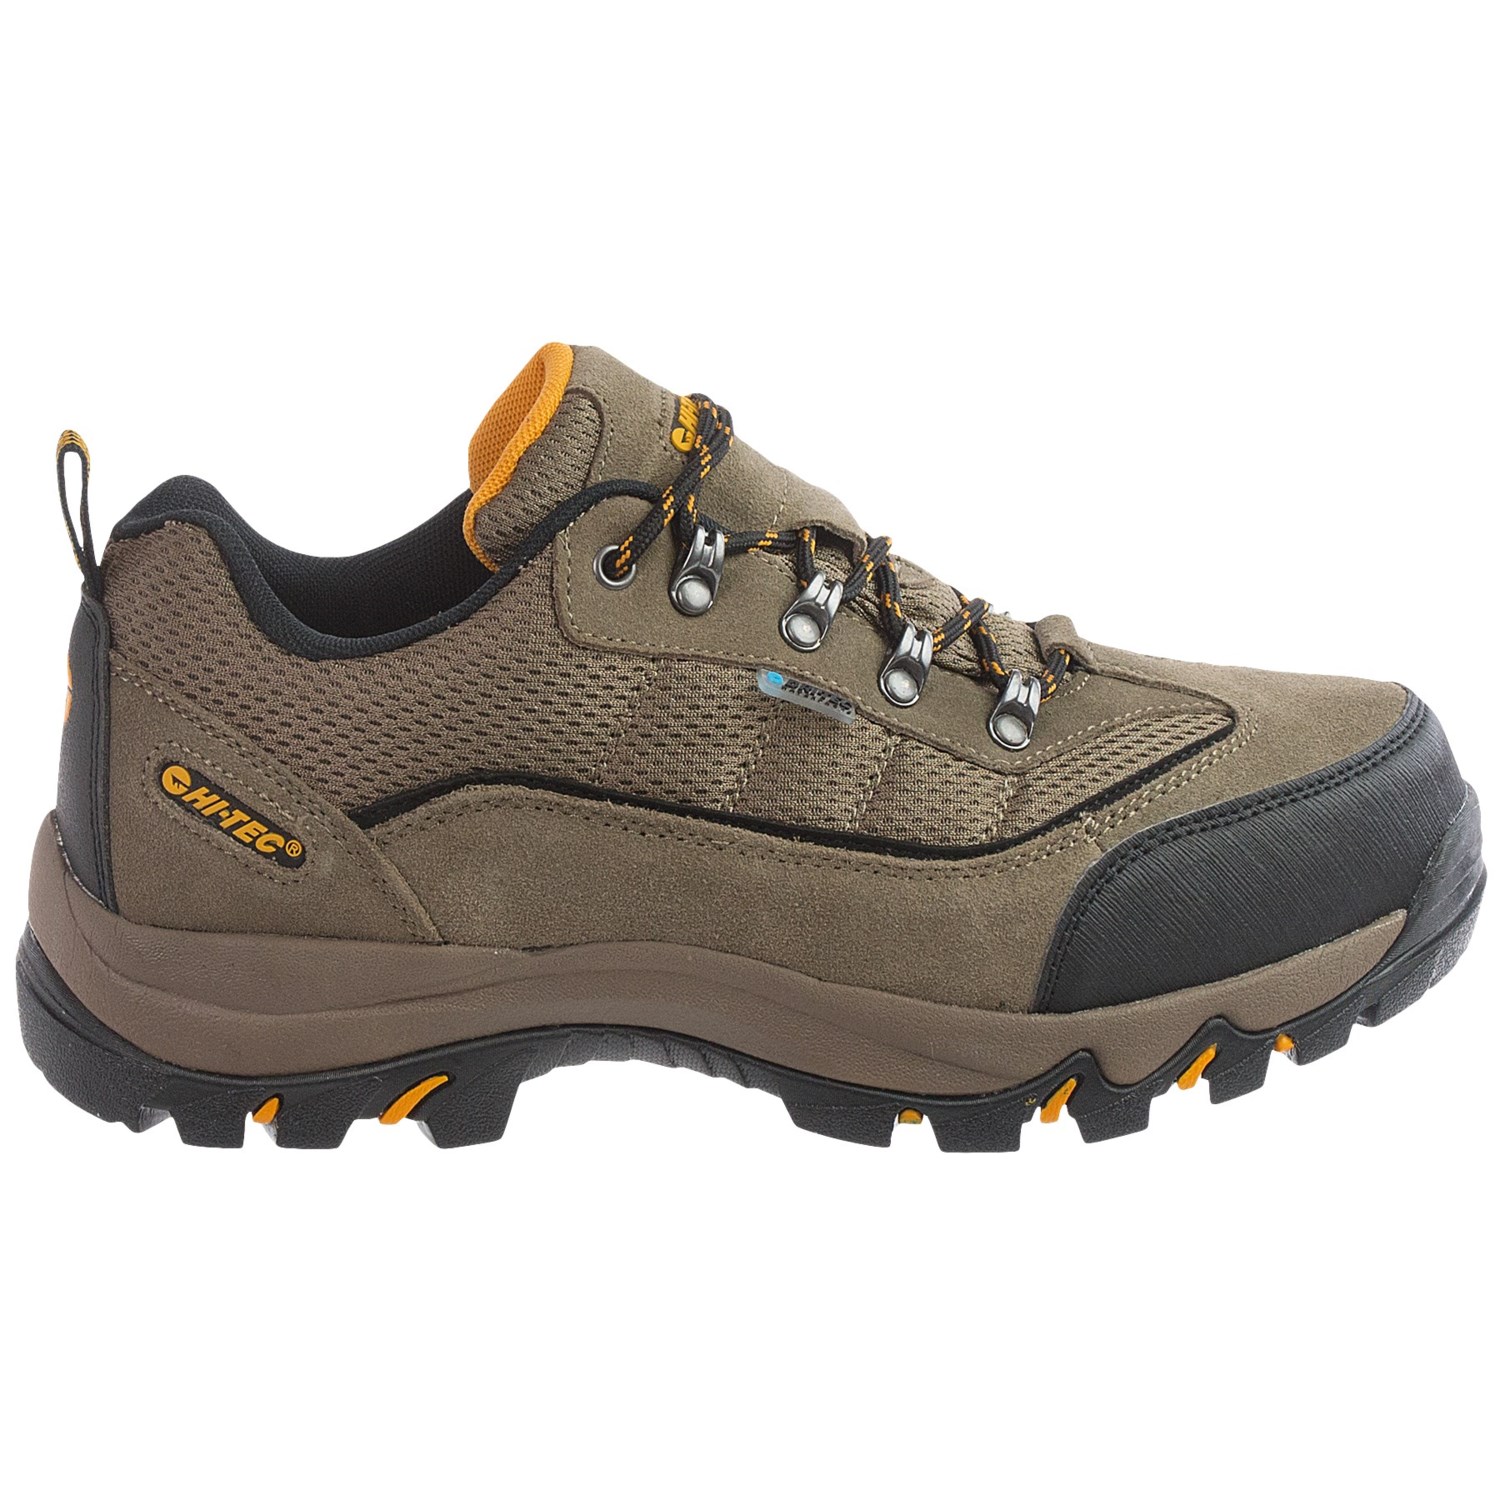 Hi-Tec Skamania Low Hiking Shoes (For Men) - Save 50%